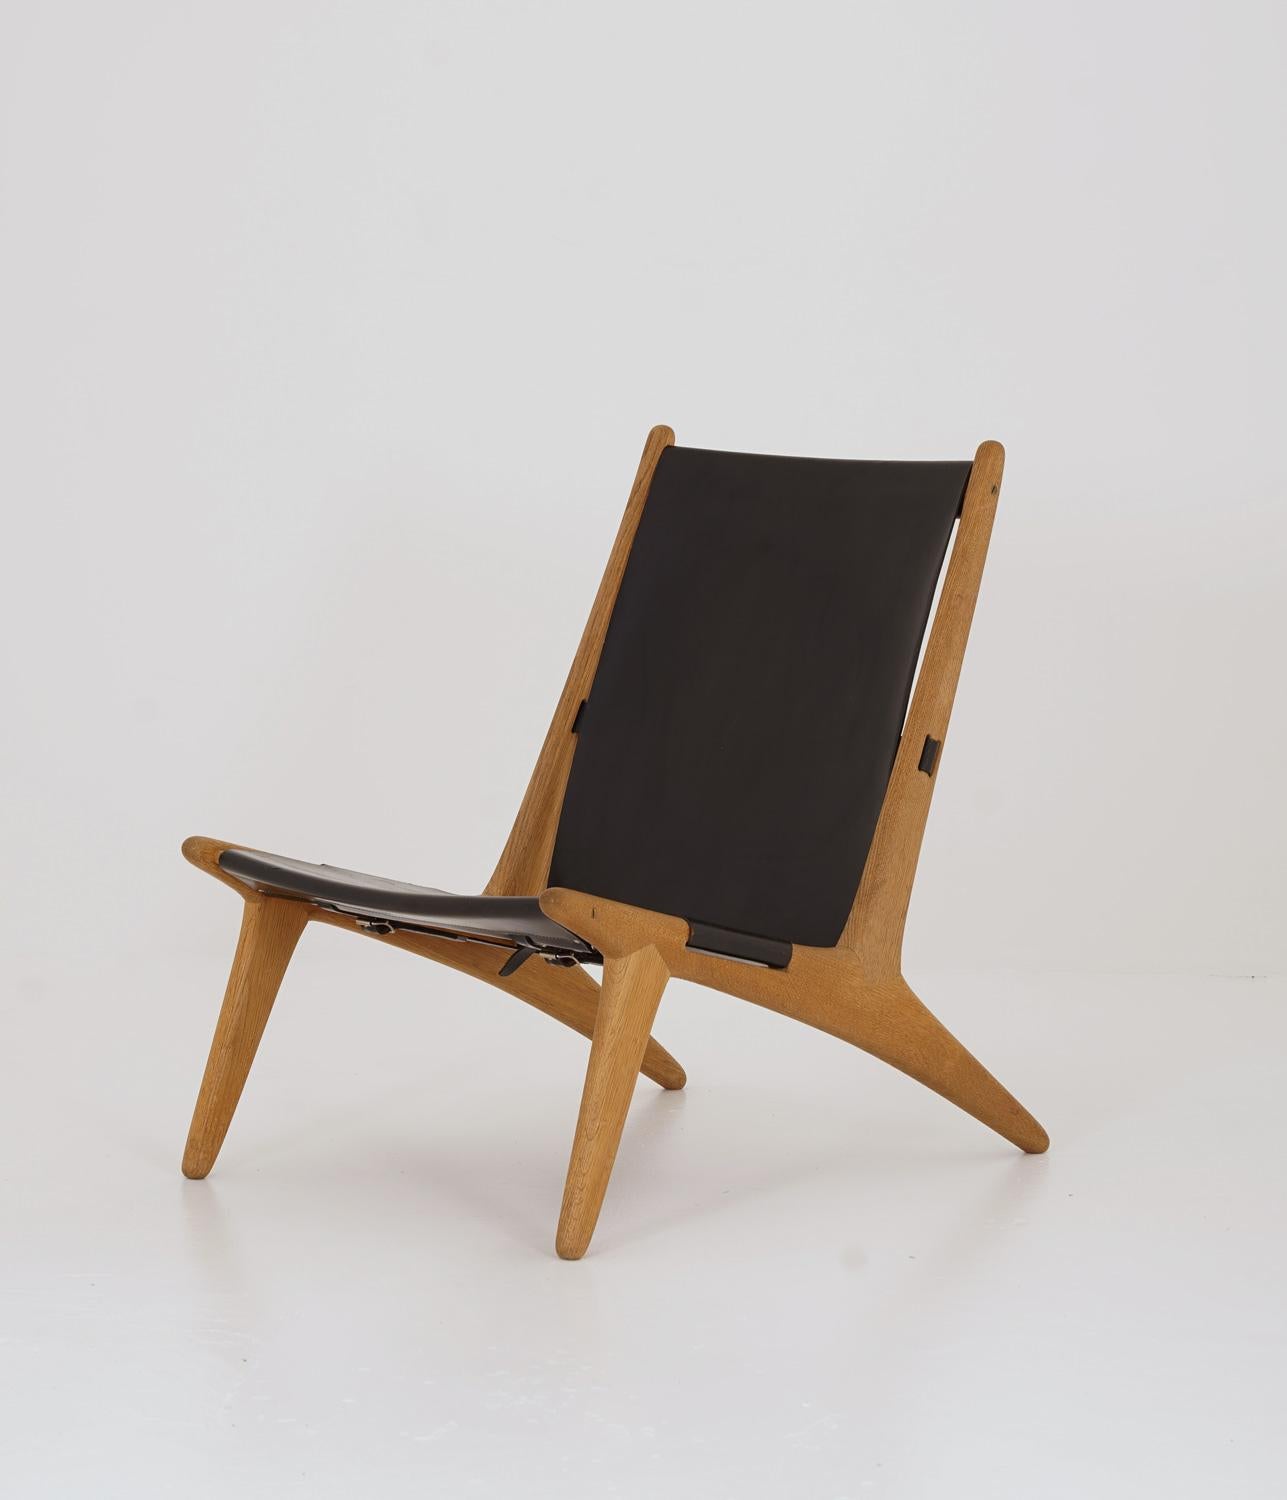 Rare chaise longue modèle 204 de Uno & Östen Kristiansson pour Luxus, Suède.
La chaise de chasse a été conçue par Uno et Östen Kristiansson en 1954 et appartient au sommet de l'histoire du design suédois. La chaise est composée d'un cadre en chêne